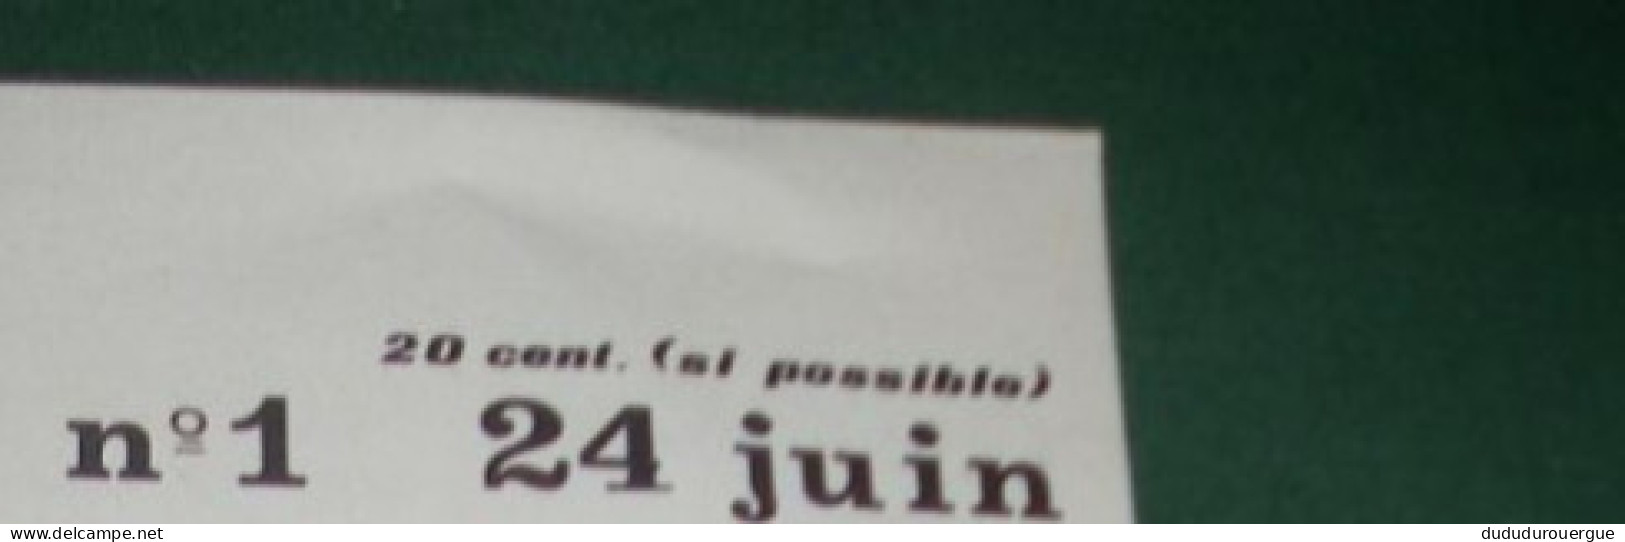 AGIR POUR VIVRE ! , JOURNAL DES SYNDICALISTES PROLETARIENS CGT DE RENAULT - CLEON : LE N ° 1 - 1950 - Today